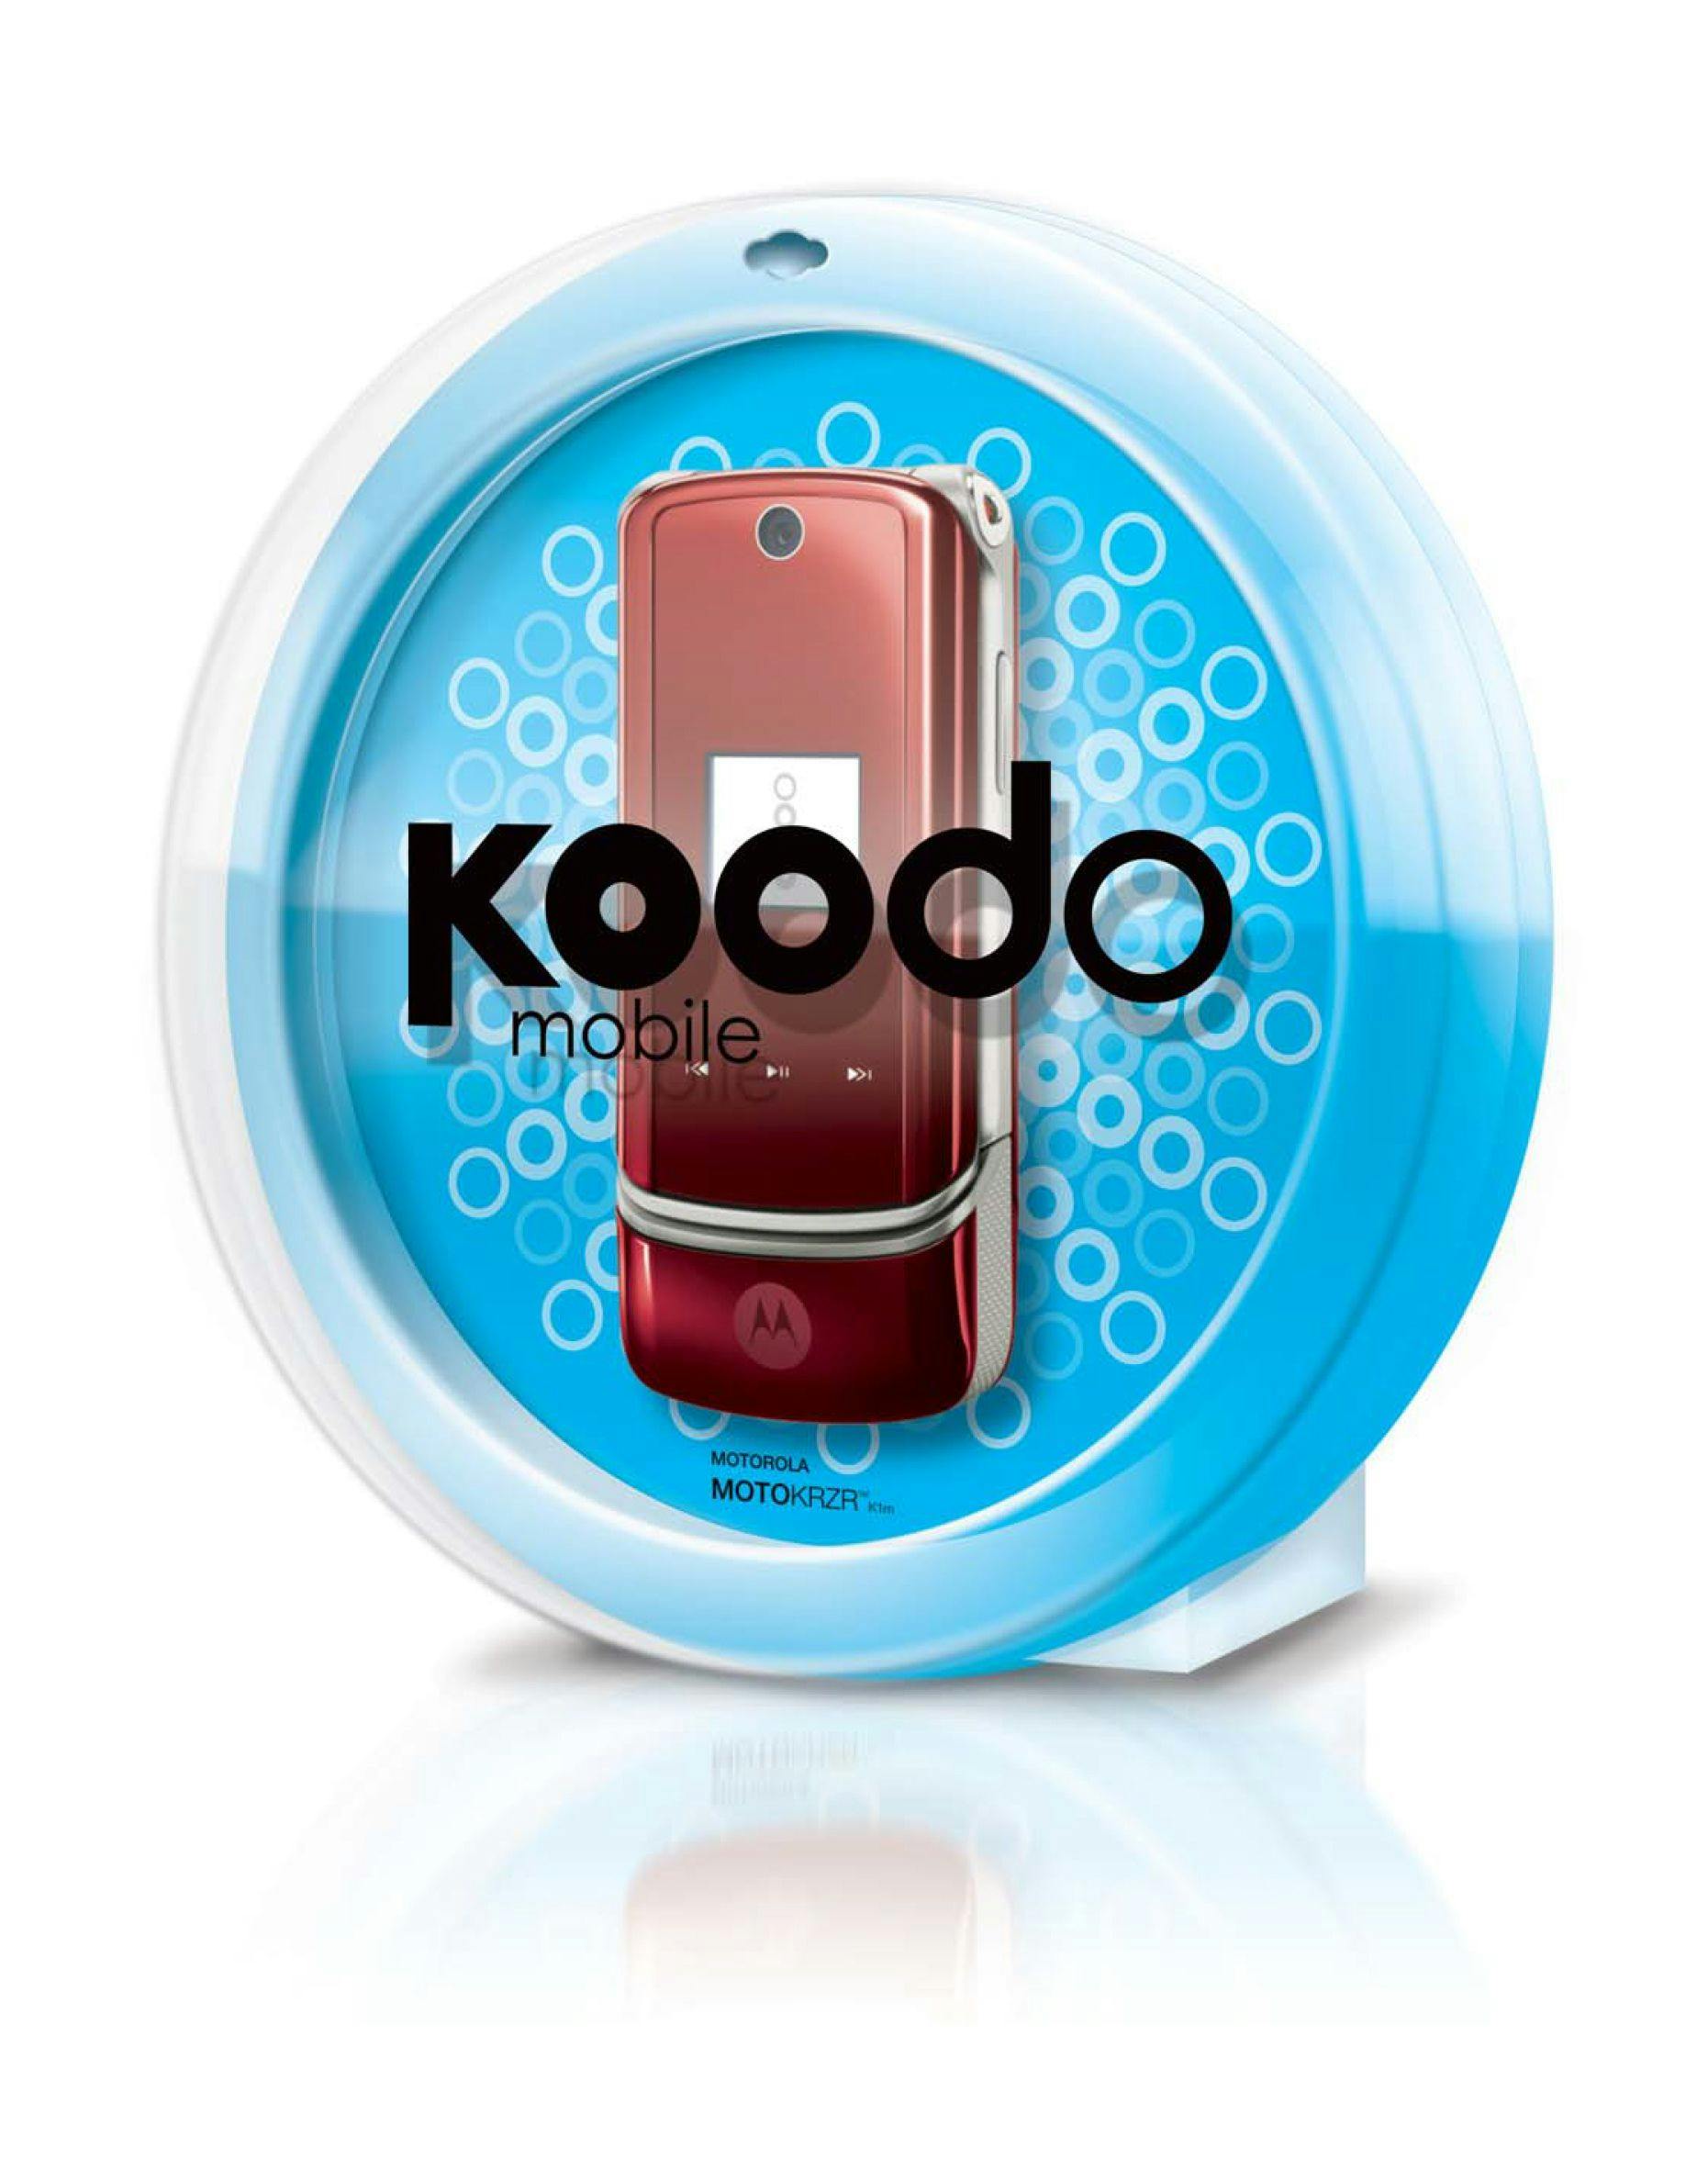 Koodo phone packaging